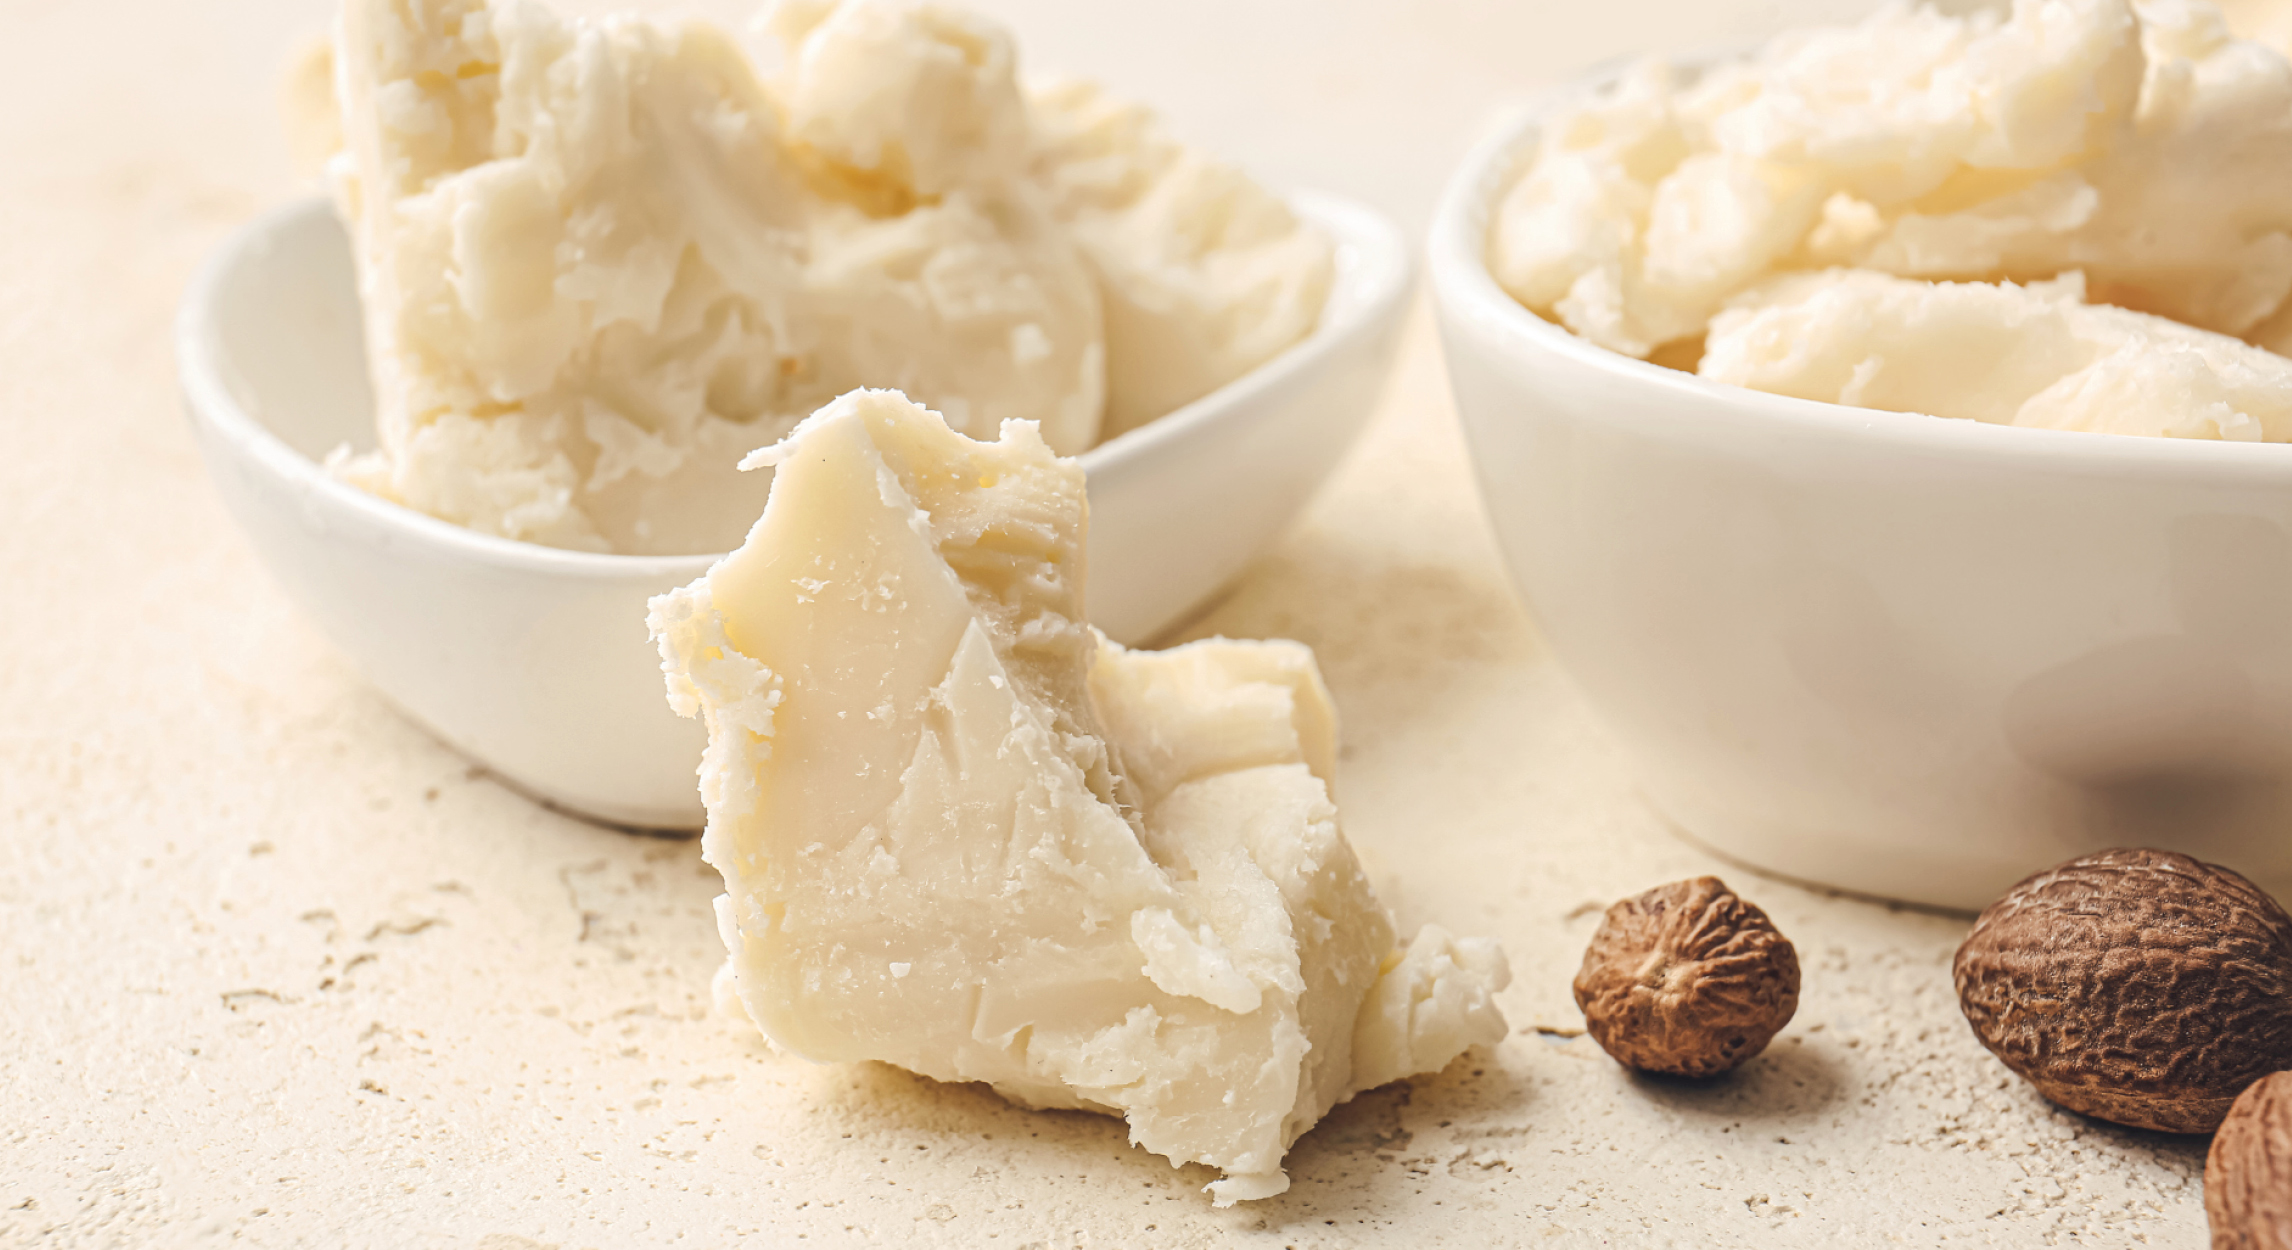 The Natural Healing Properties of Shea Butter